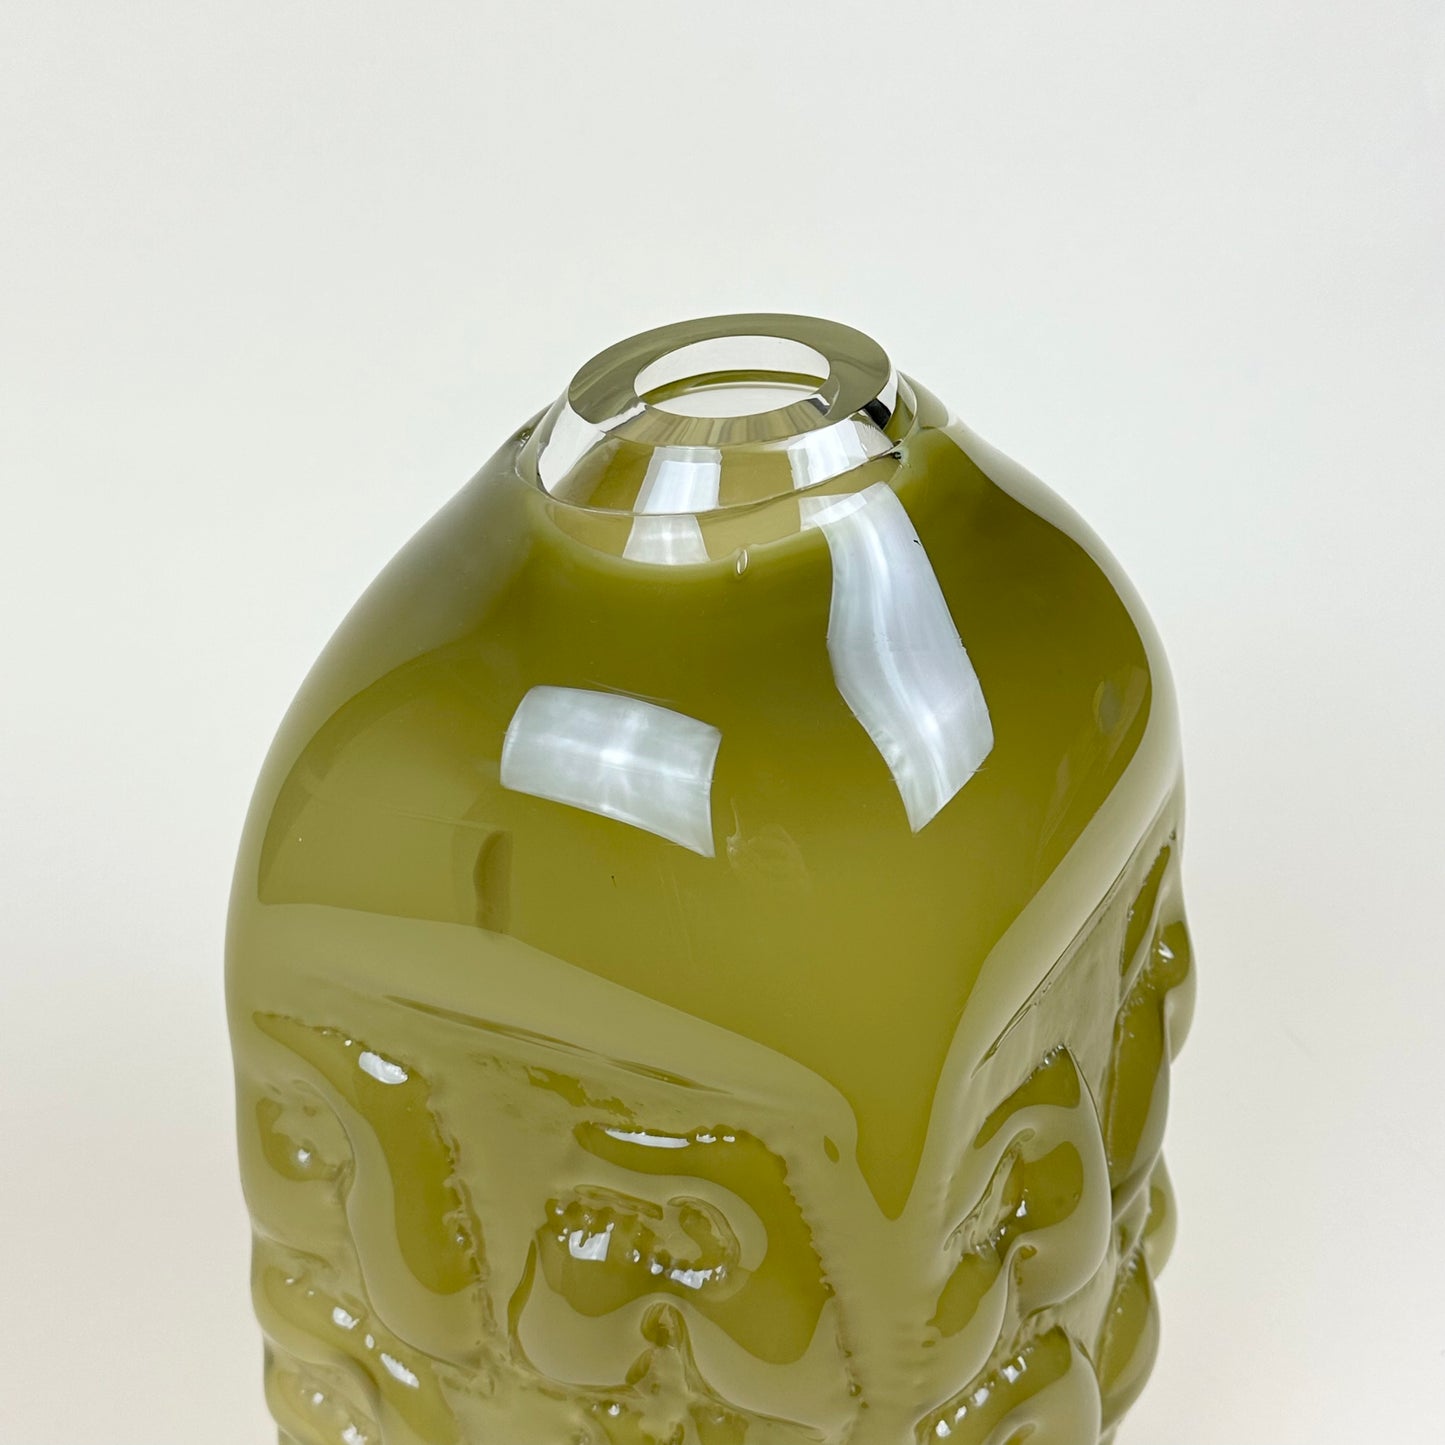 Olive vase "AADÄÄRE" by Studio Reiser